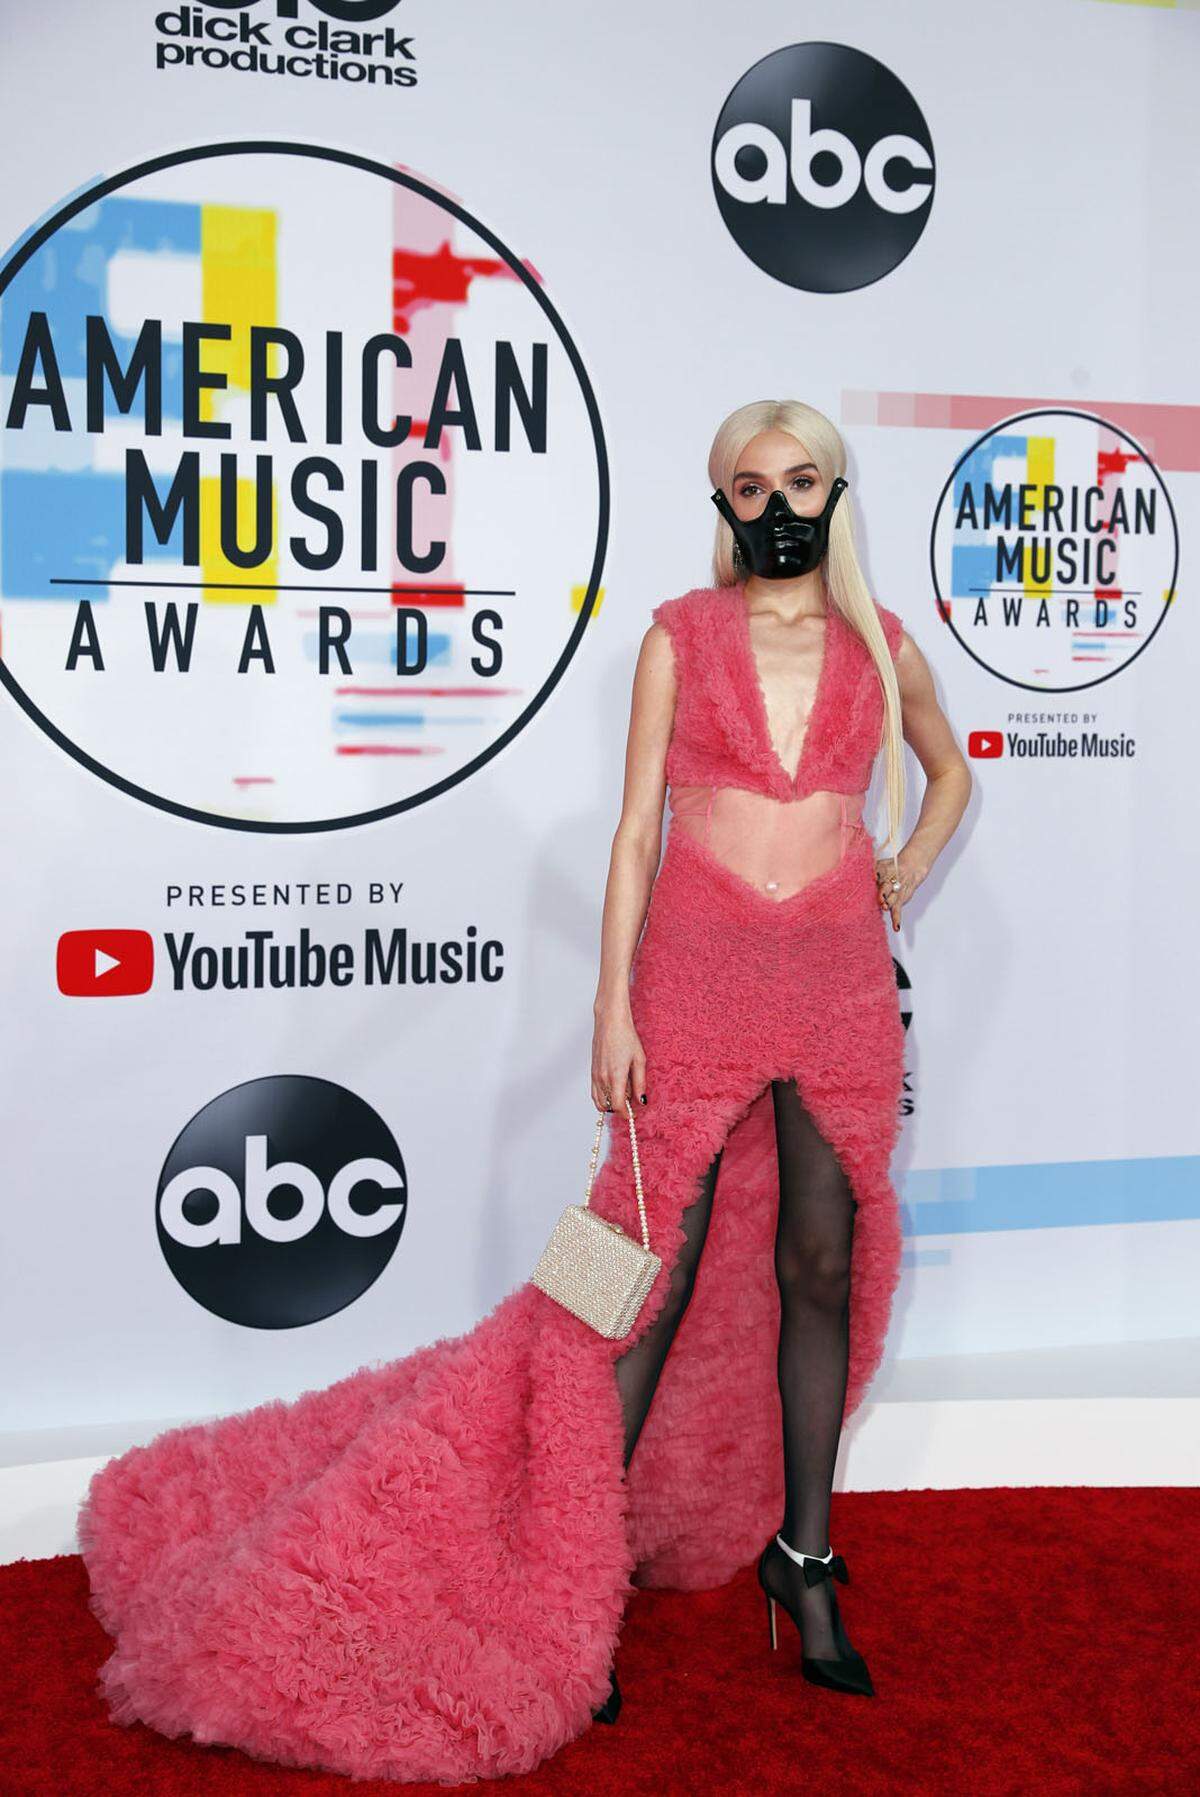 Auf dem roten Teppich der American Music Awards kann man sich modisch austoben und auch gewagte Looks präsentieren. Den Bogen überspannt hat aber Musikerin Poppy, die zu ihrem pinken Kleid eine Art Maulkorb trug.    